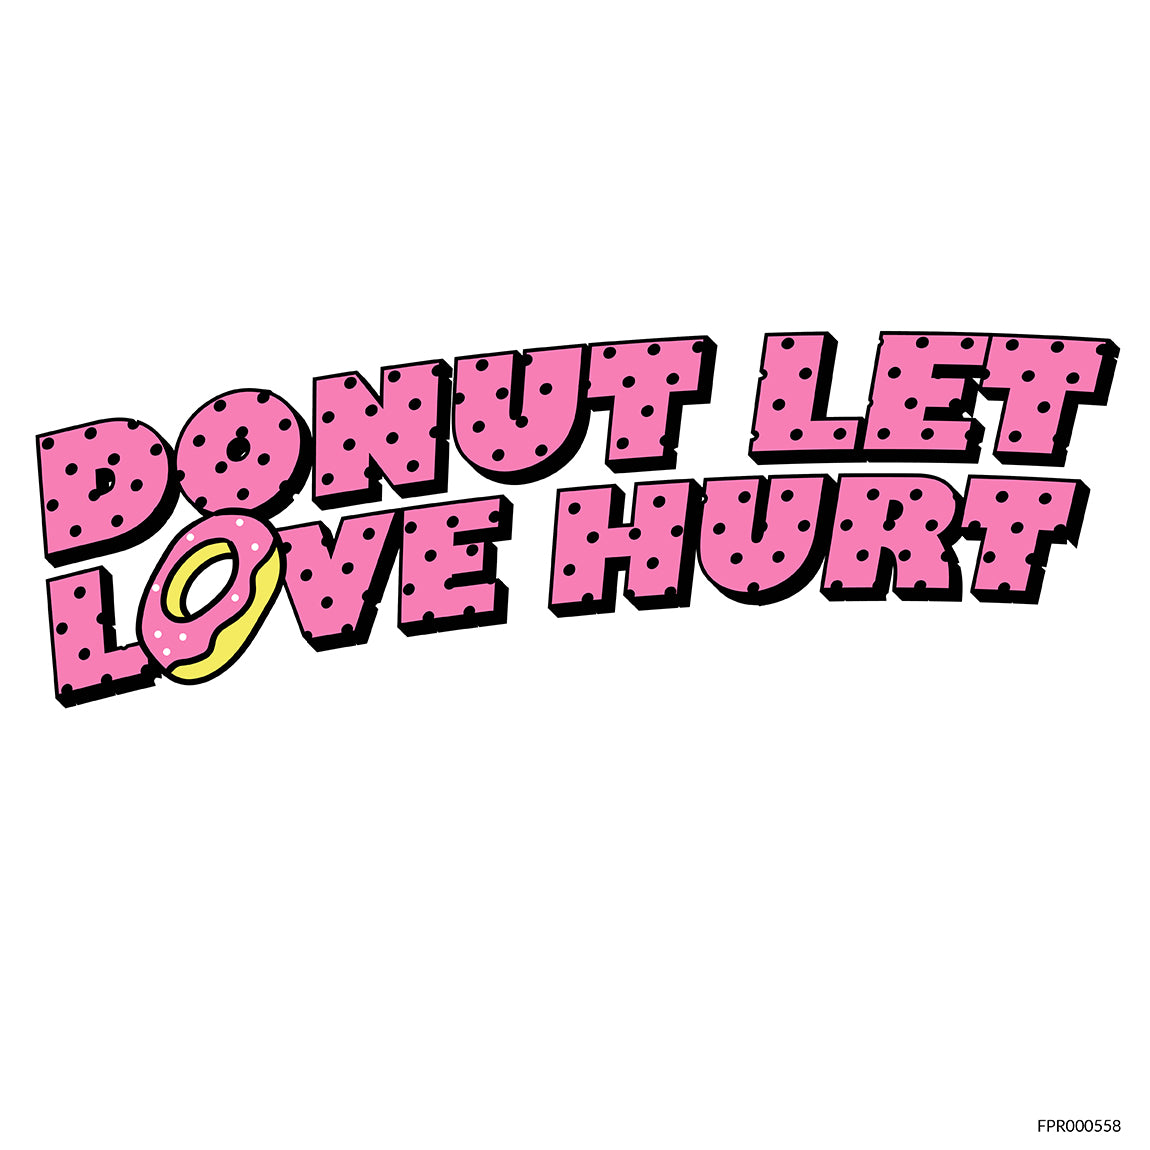 Donut Let Love Hurt